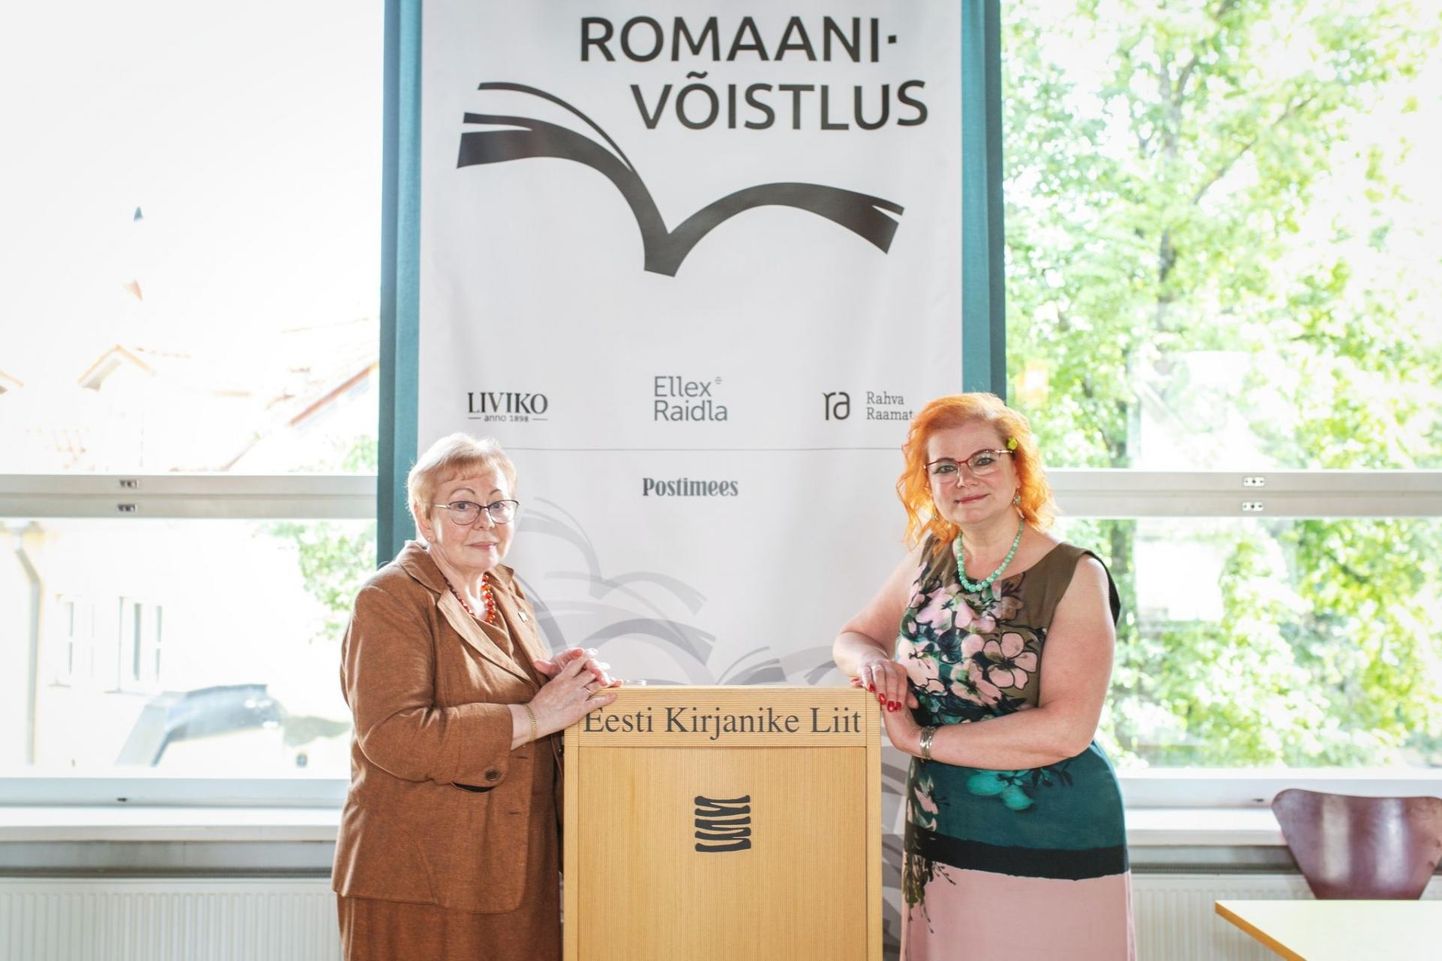 Eesti Kirjanike Liidu 2021. aasta romaanivõistluse võitjad Juta Kivimäe ja Loone Ots.